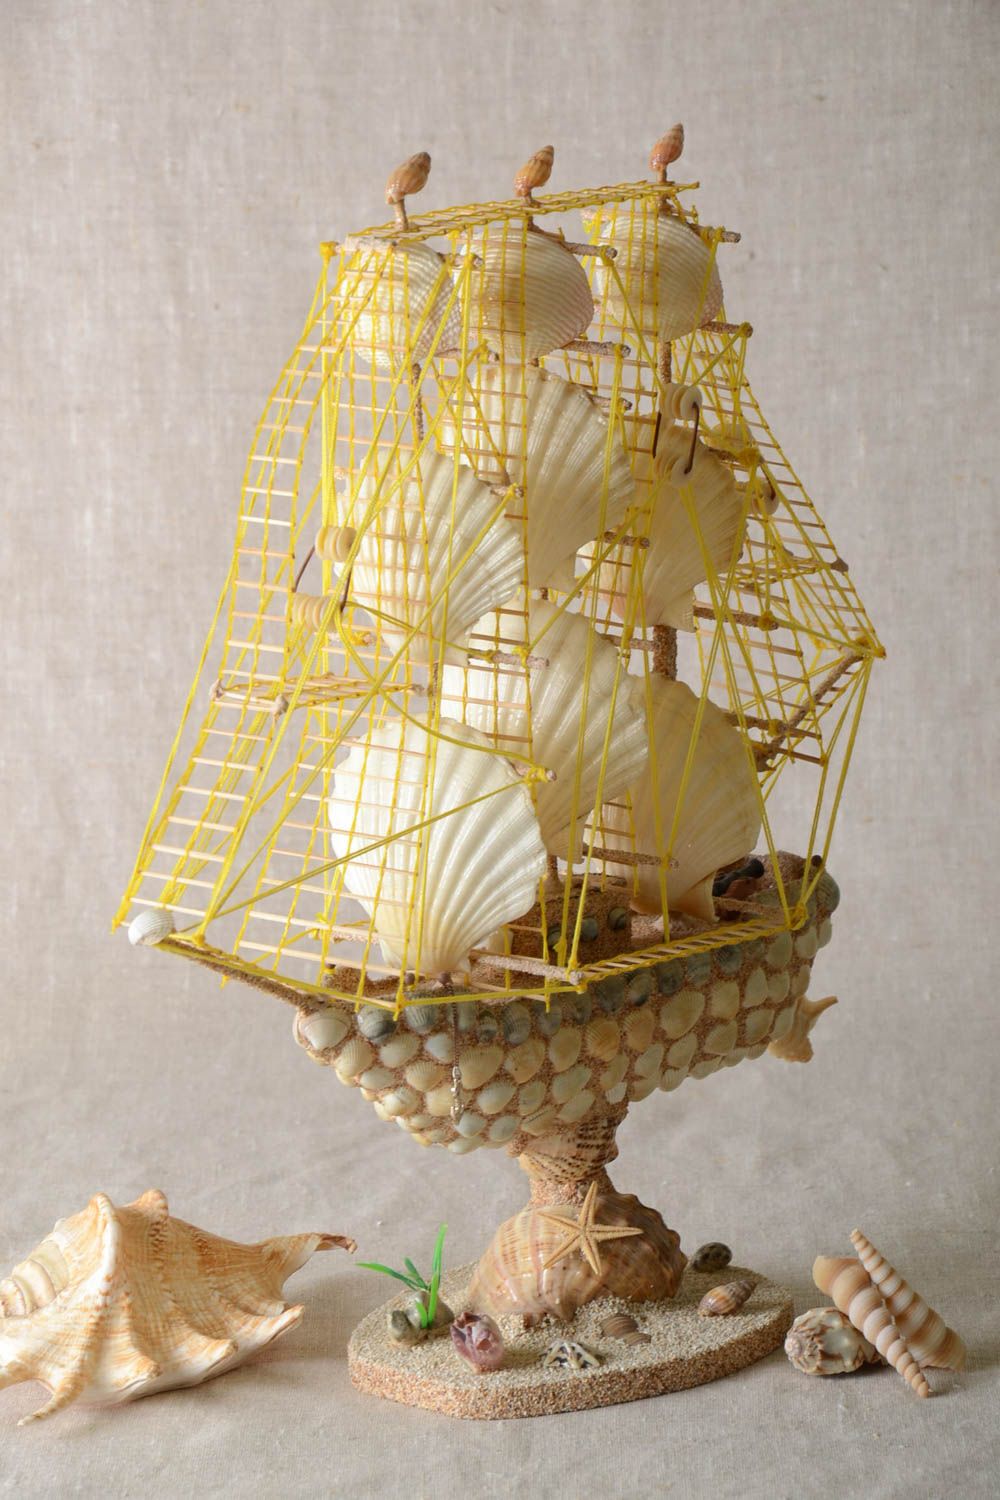 Handmade ship decor ideas gift for men home decor unusual souvenir model ship photo 1